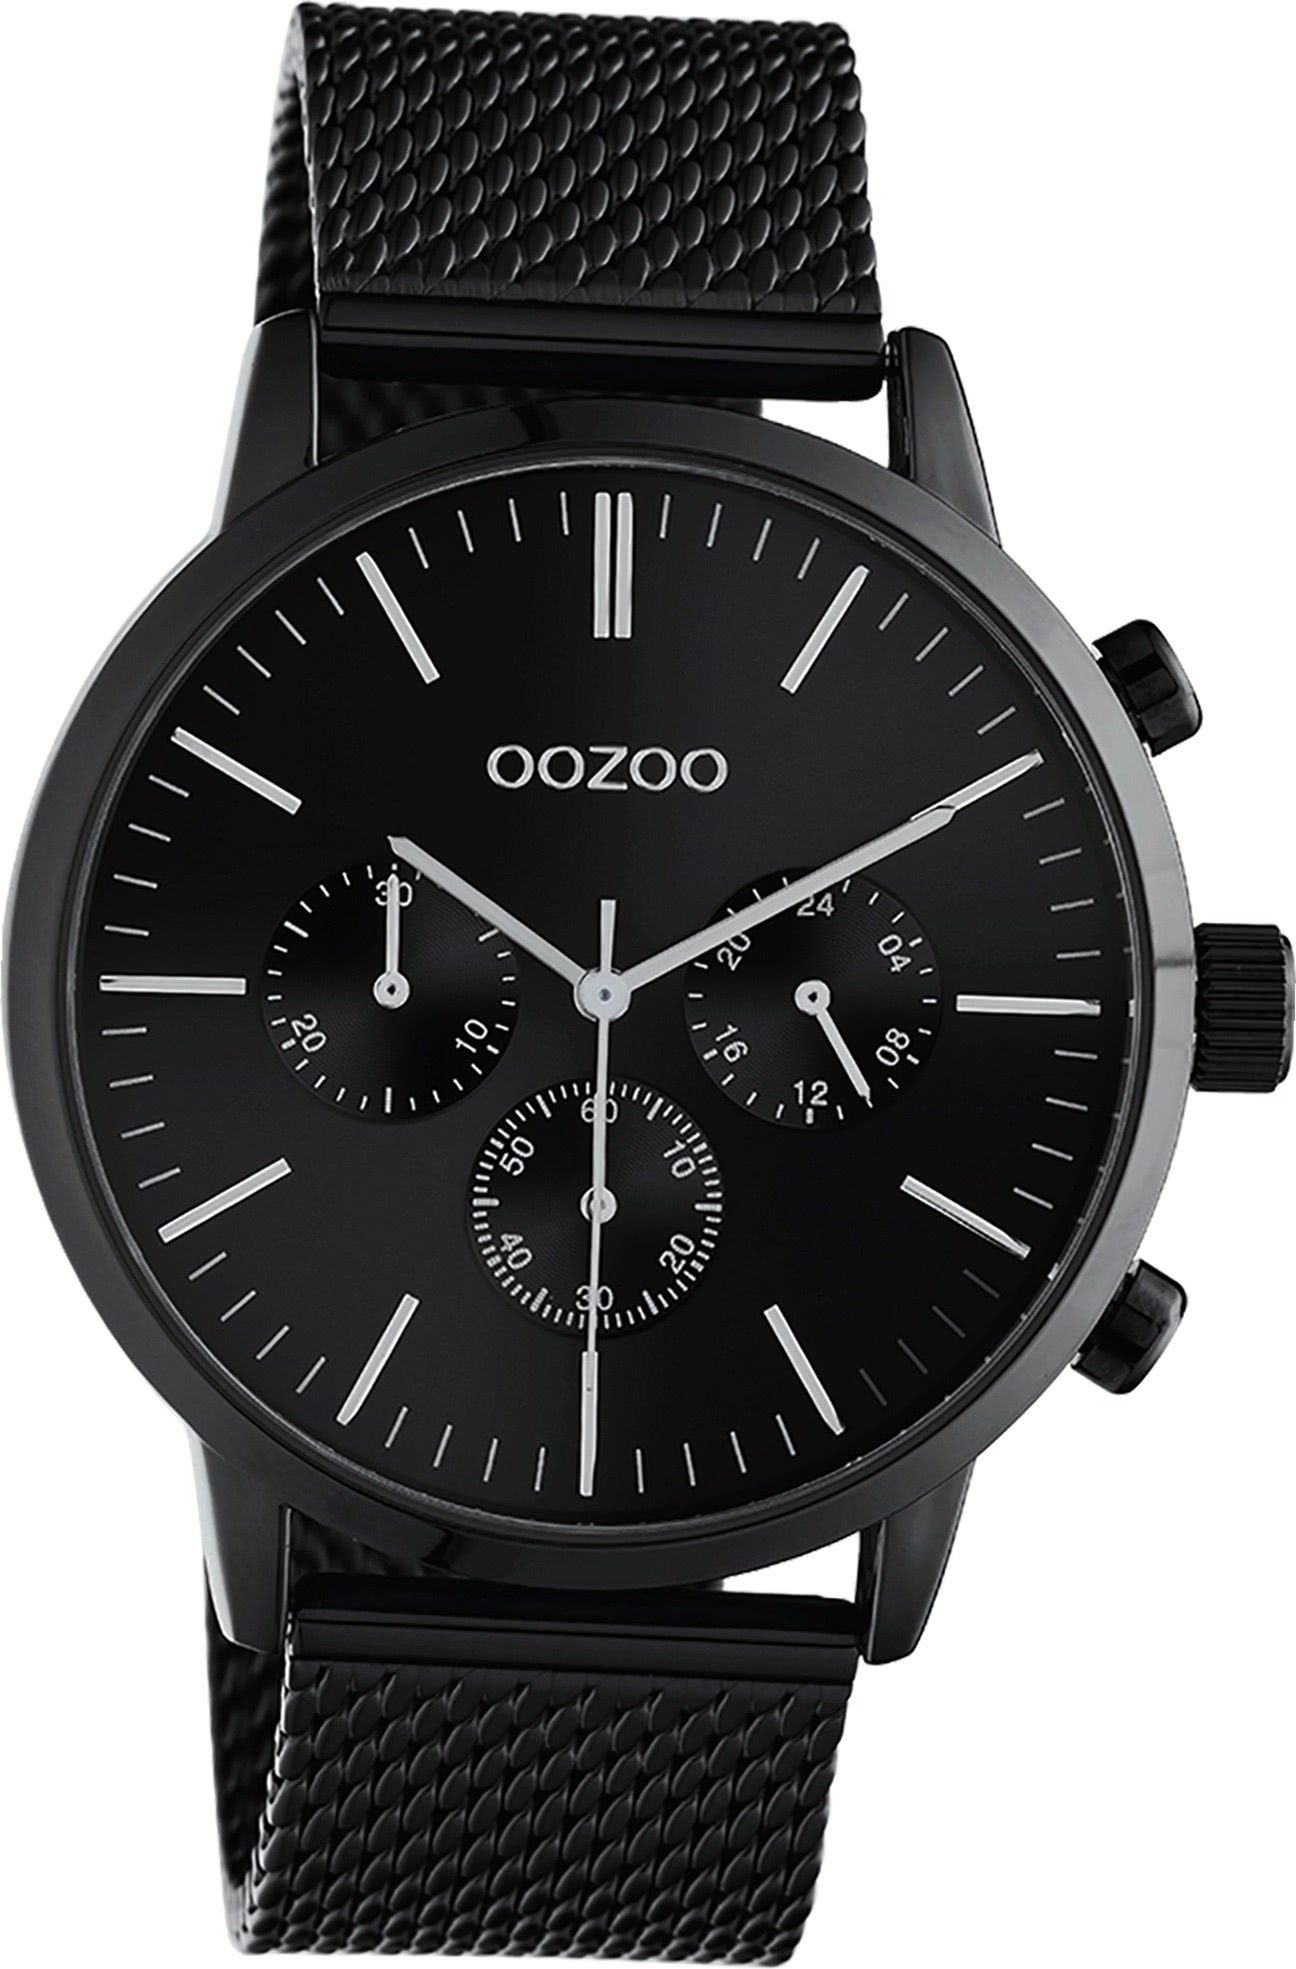 Oozoo Quarzuhr groß Unisex Herrenuhr 10914 Edelstahl OOZOO (45mm) schwarz, Analog, Uhr Damen, Edelstahlarmband Gehäuse, rundes